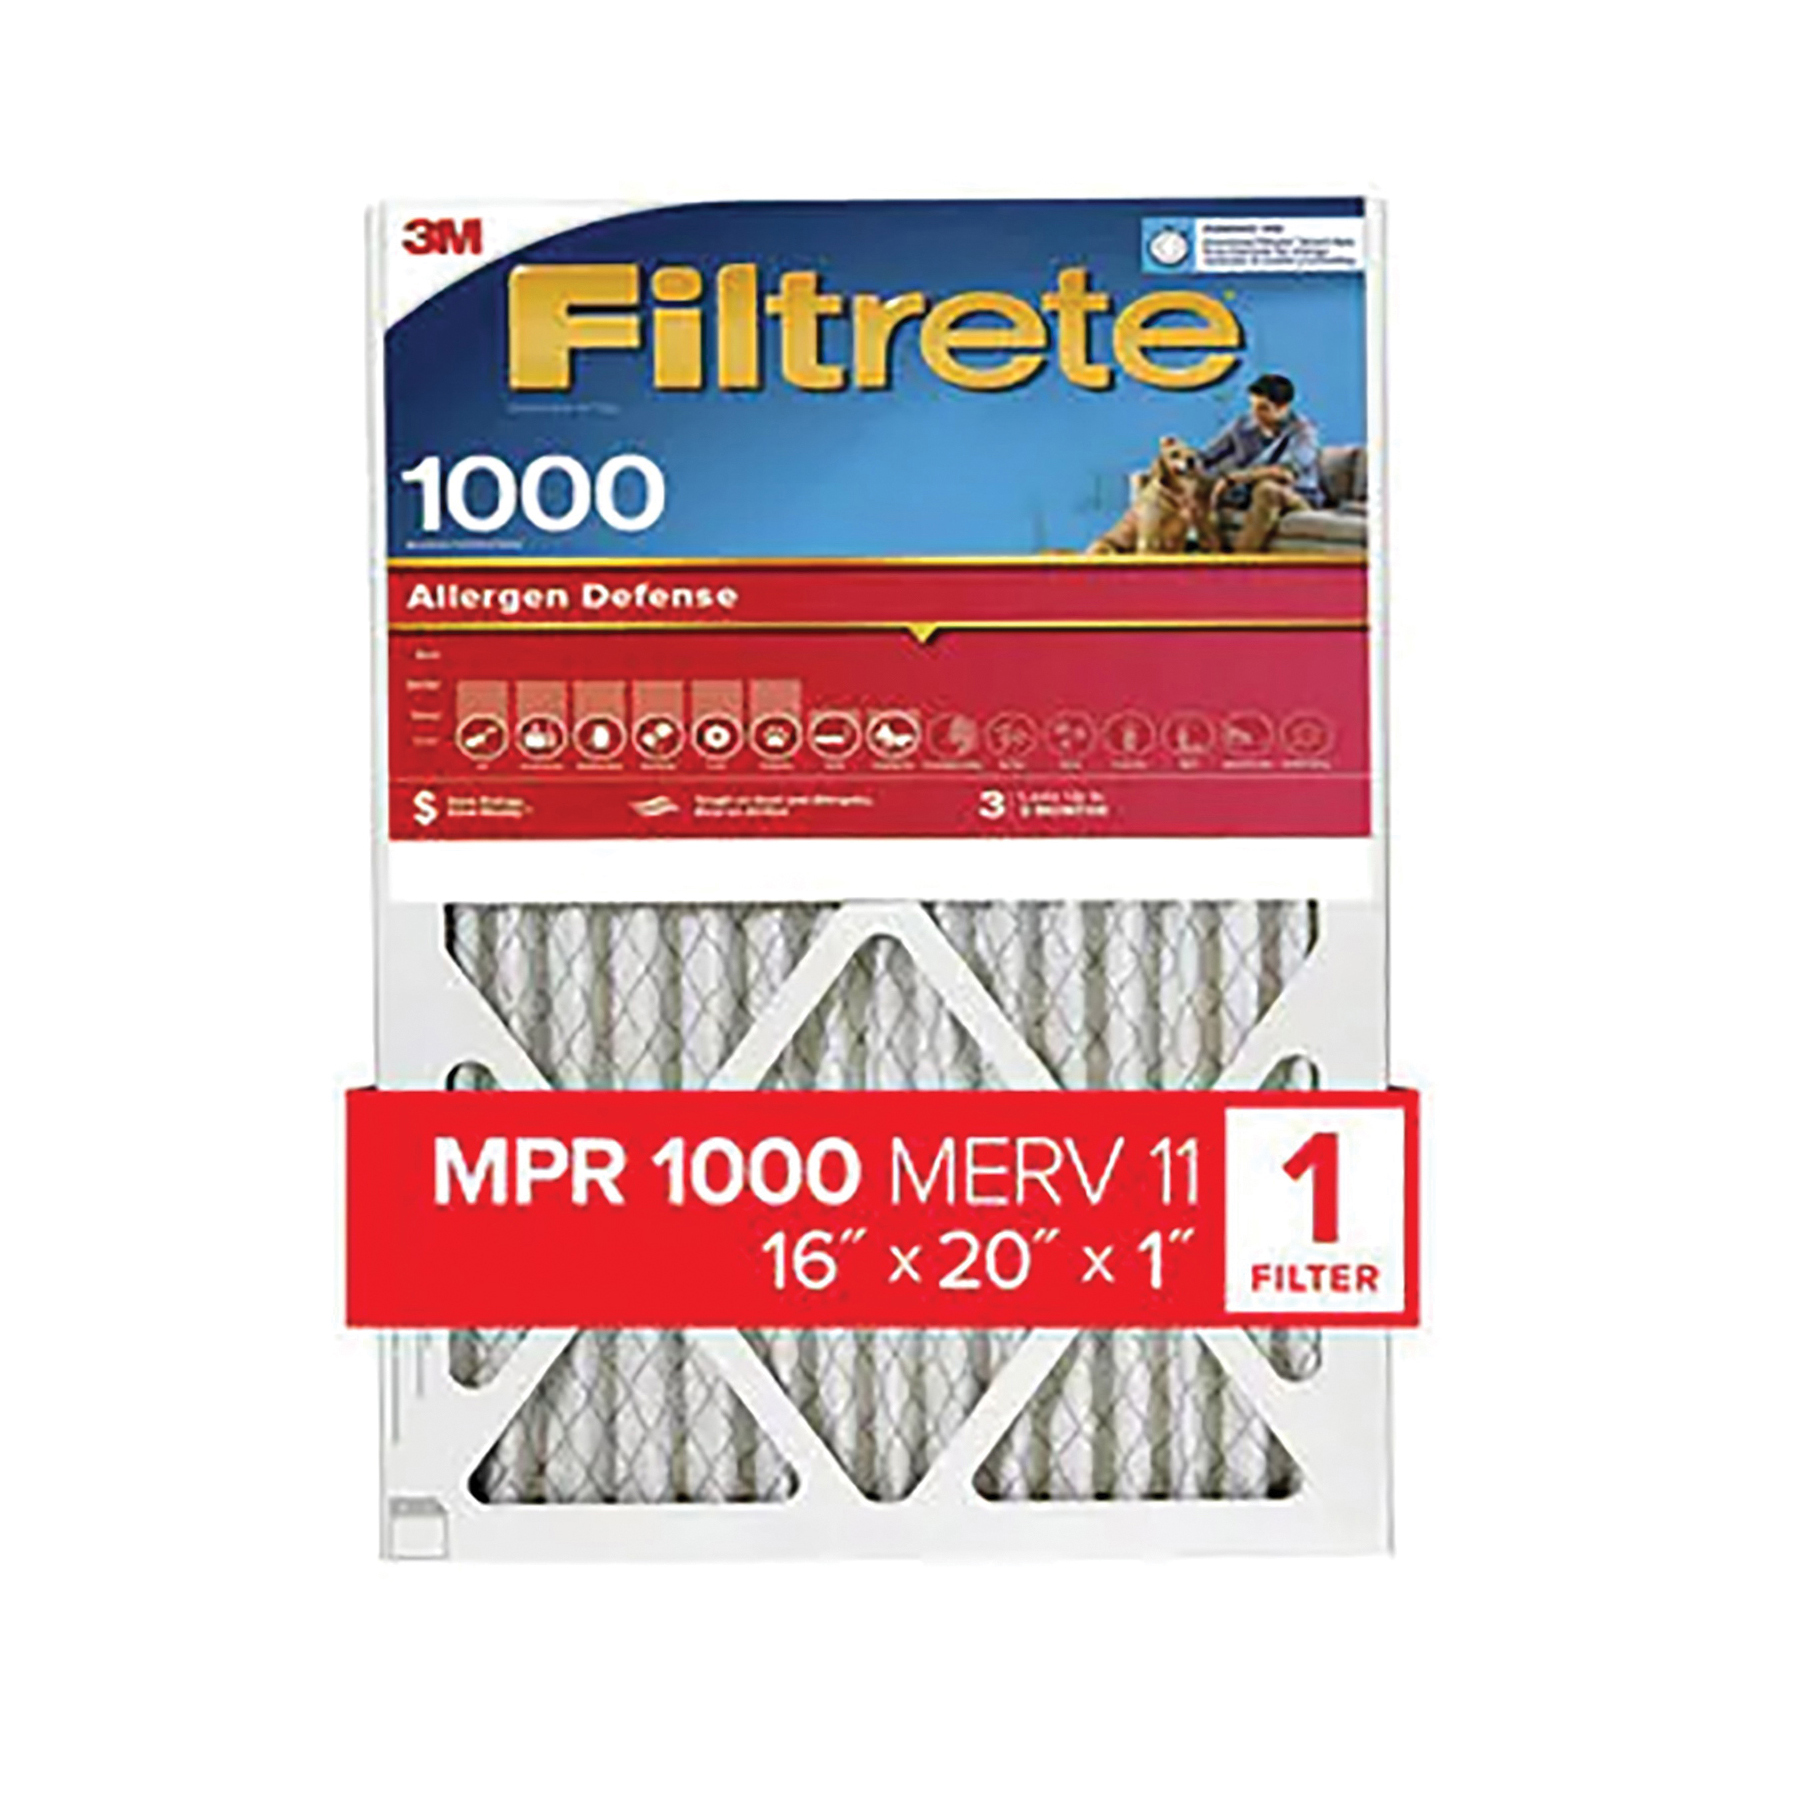 9800-4 Air Filter, 20 x 16 x 1, 11 MERV, 1000 MPR